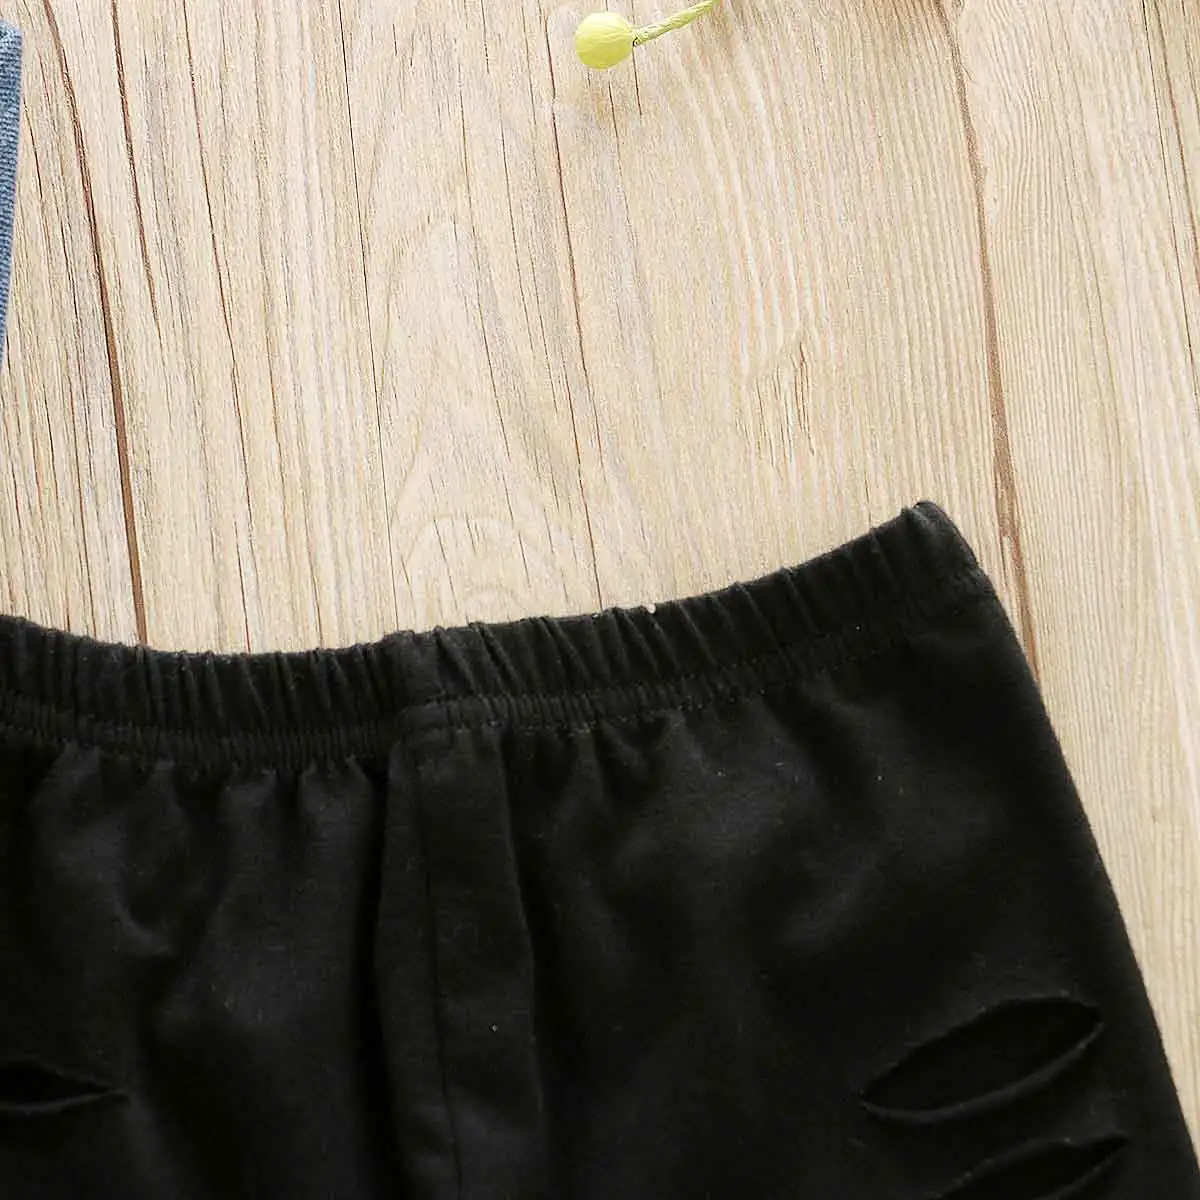 Одежда для маленьких девочек комплекты От 1 до 6 лет джинсовые топы с открытыми плечами с прорезями узкие брюки Комплект осенней одежды